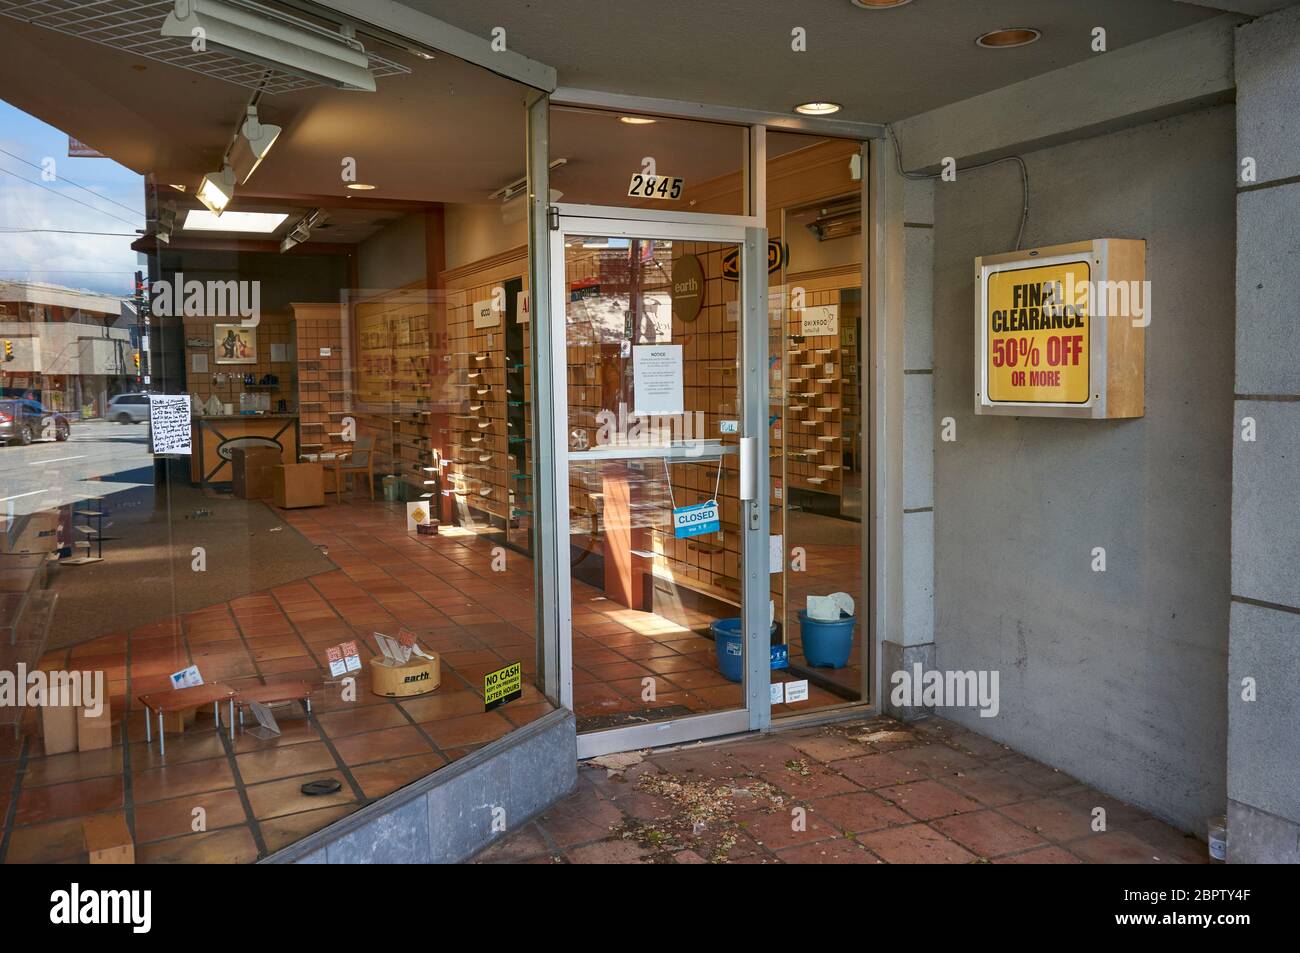 Vancouver, Canadá, 19 de mayo de 2020. Una tienda vacía que ha salido de sus negocios debido a las dificultades económicas causadas por la pandemia del COVID-19. Foto de stock